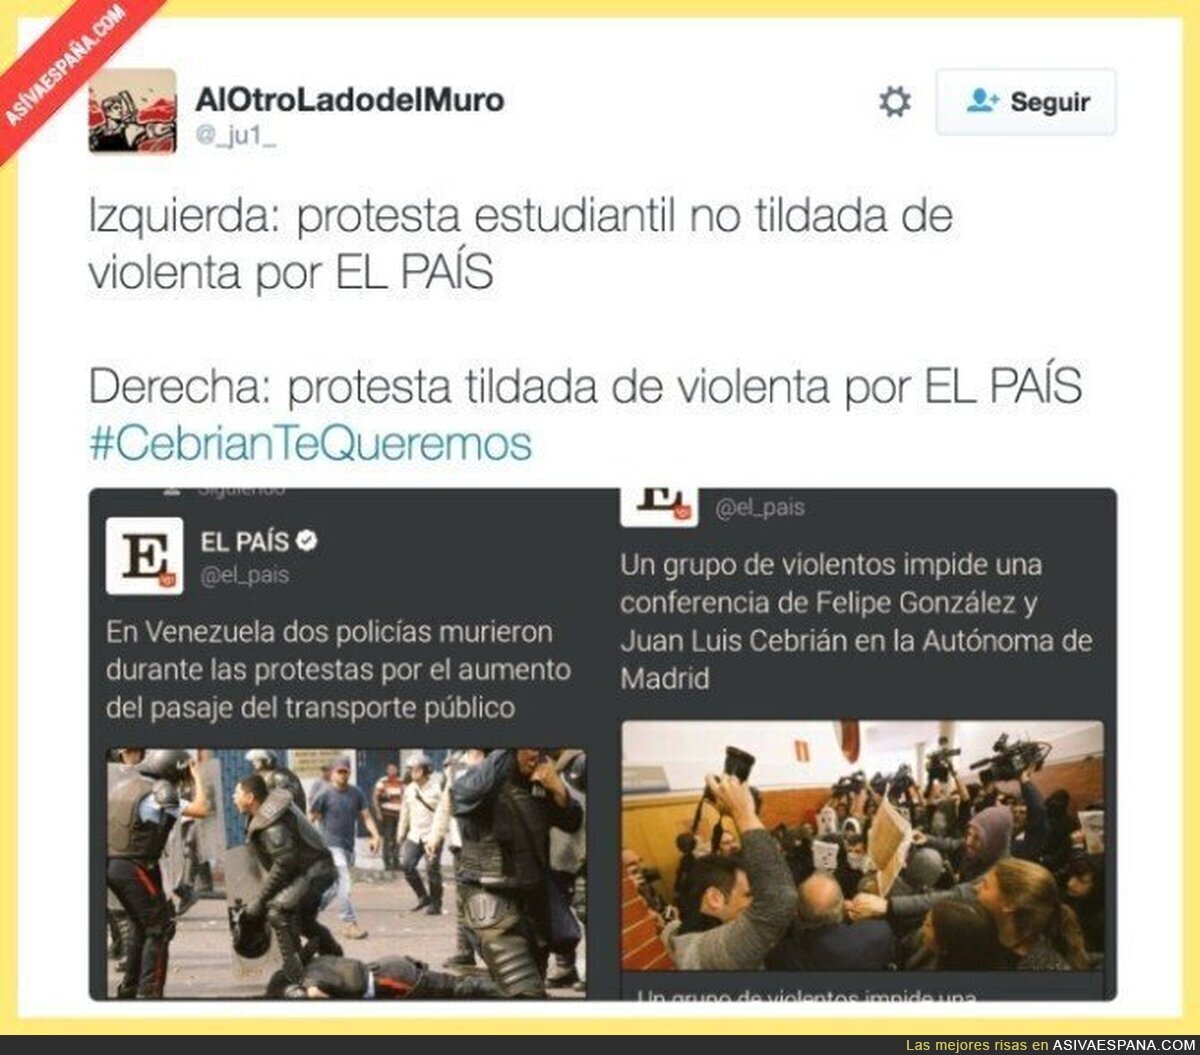 Ya no queda nada de credibilidad a "El País"